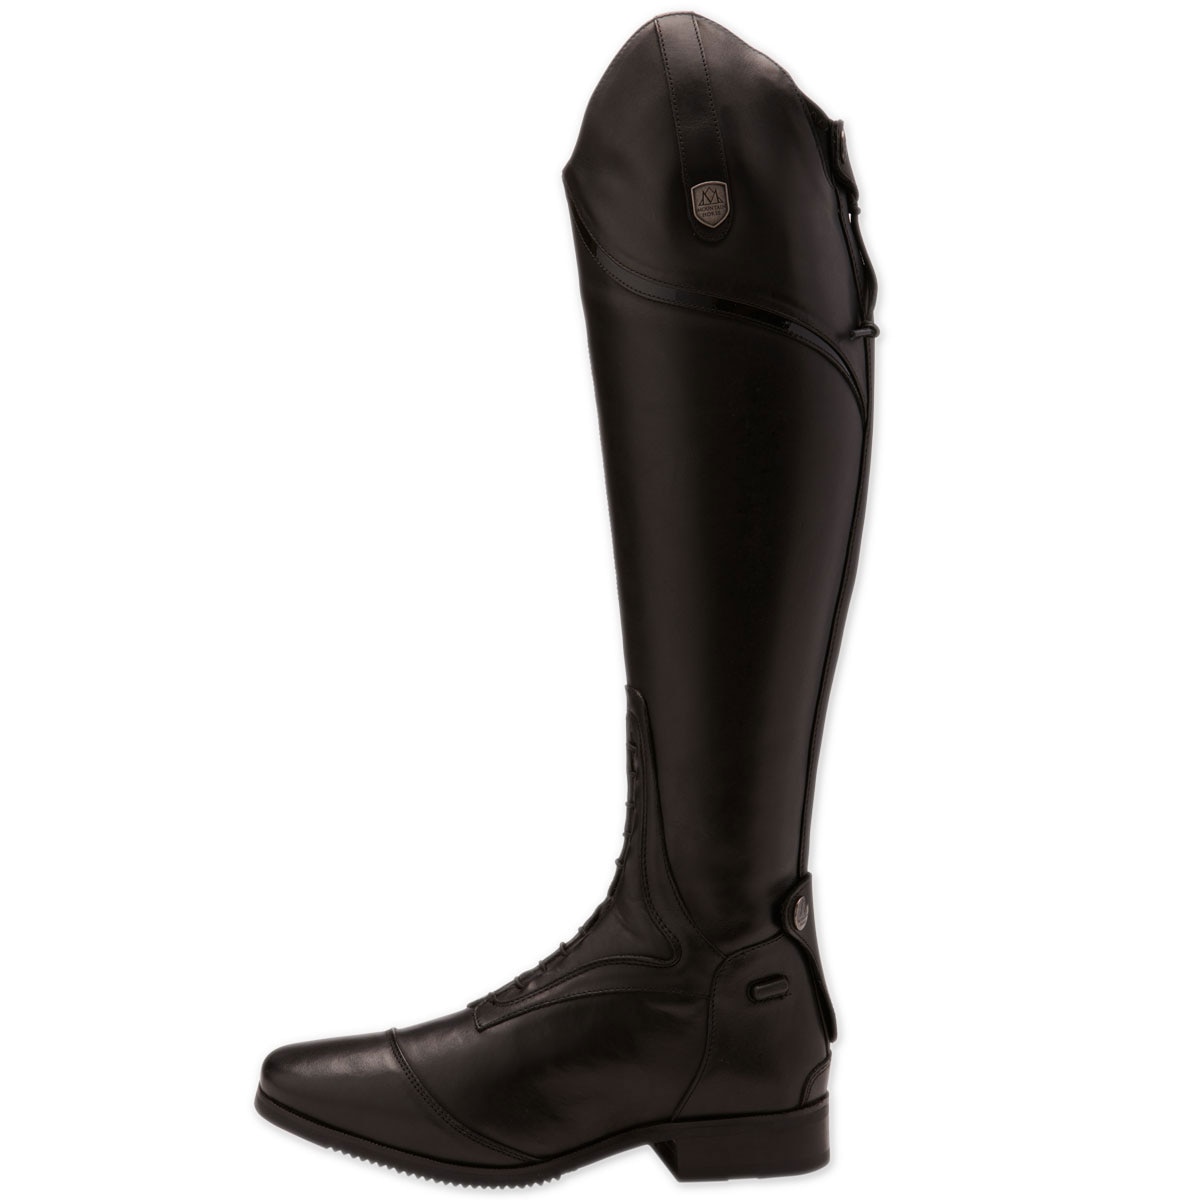 Horze Women's Rubber Riding Boots long/tall boots black rubber 